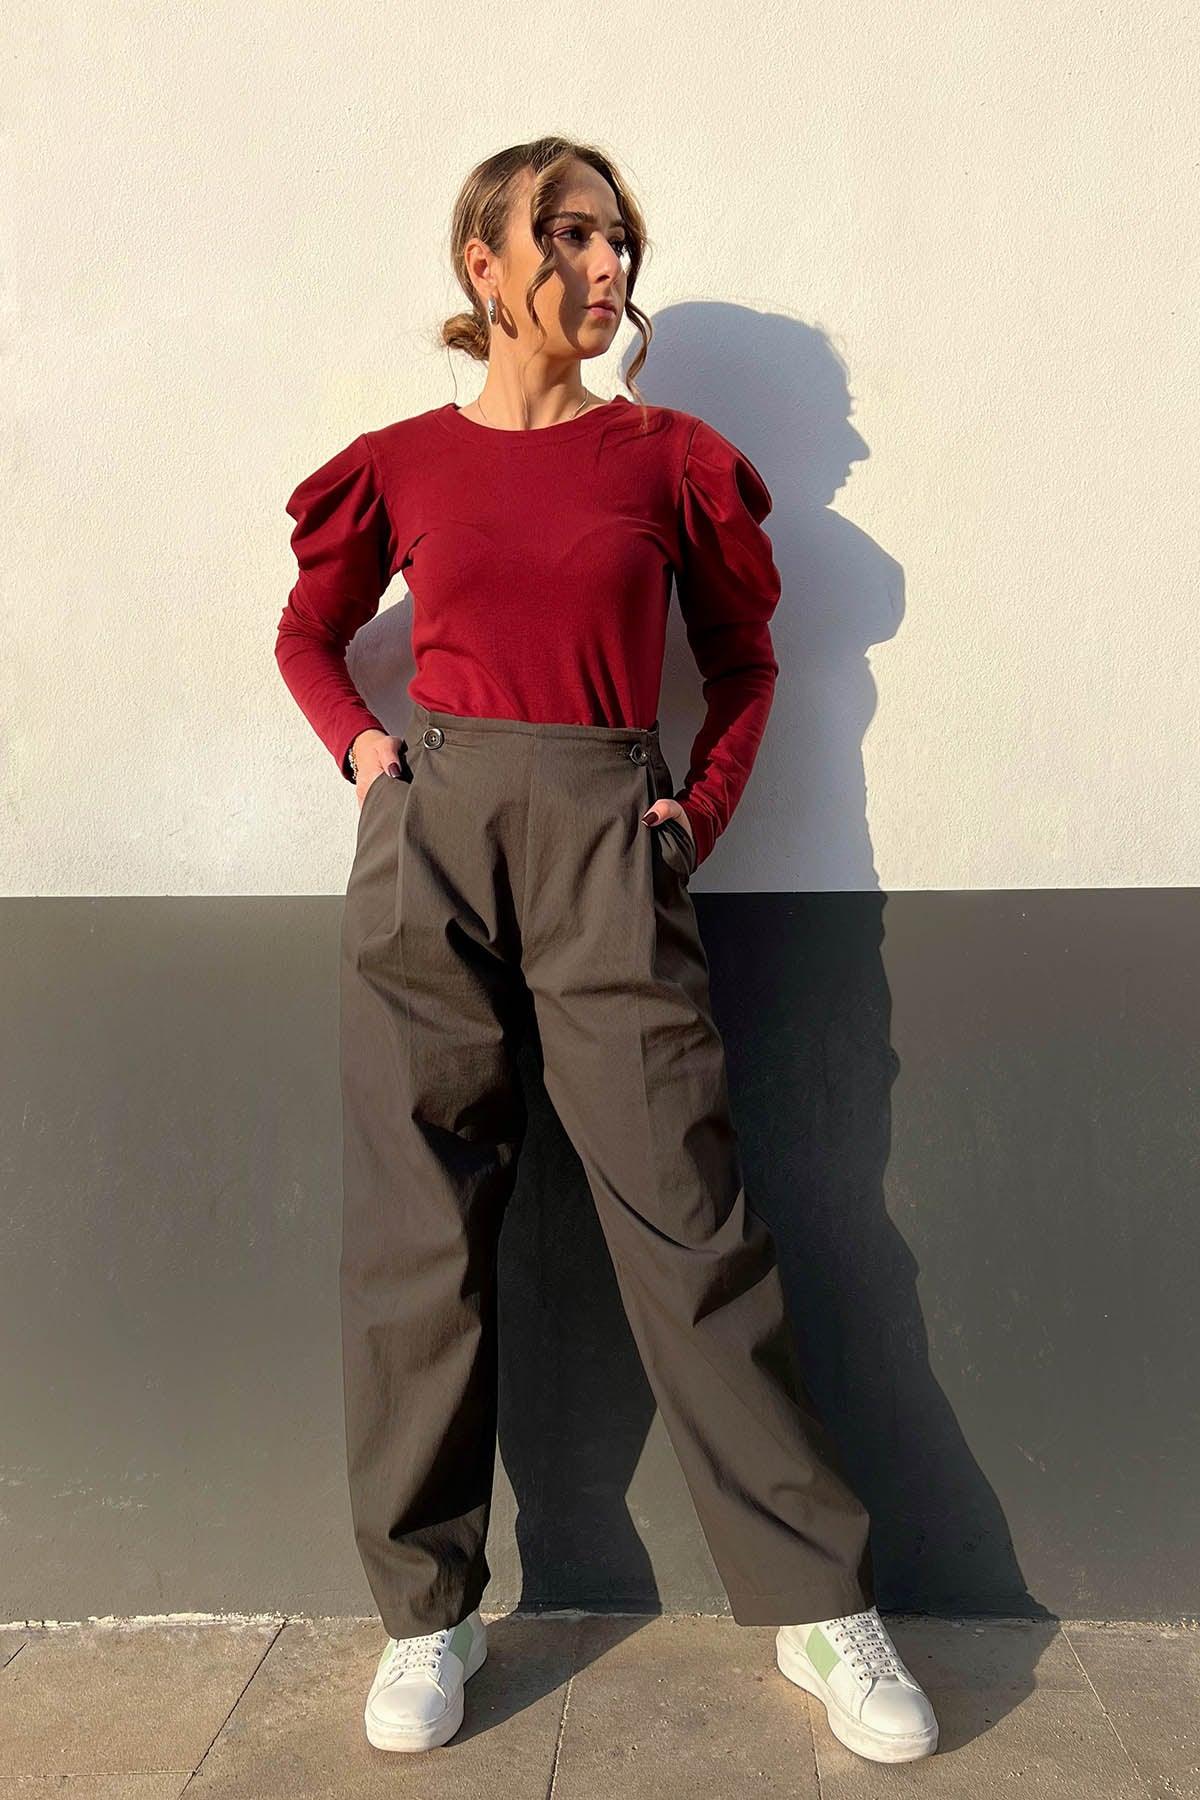  Pantalone in ossido di Rame brand malia lab atelier moda etica sostenibile artigianale abbigliamento sostenibile donna vestiti ecosostenibili tessuti naturali